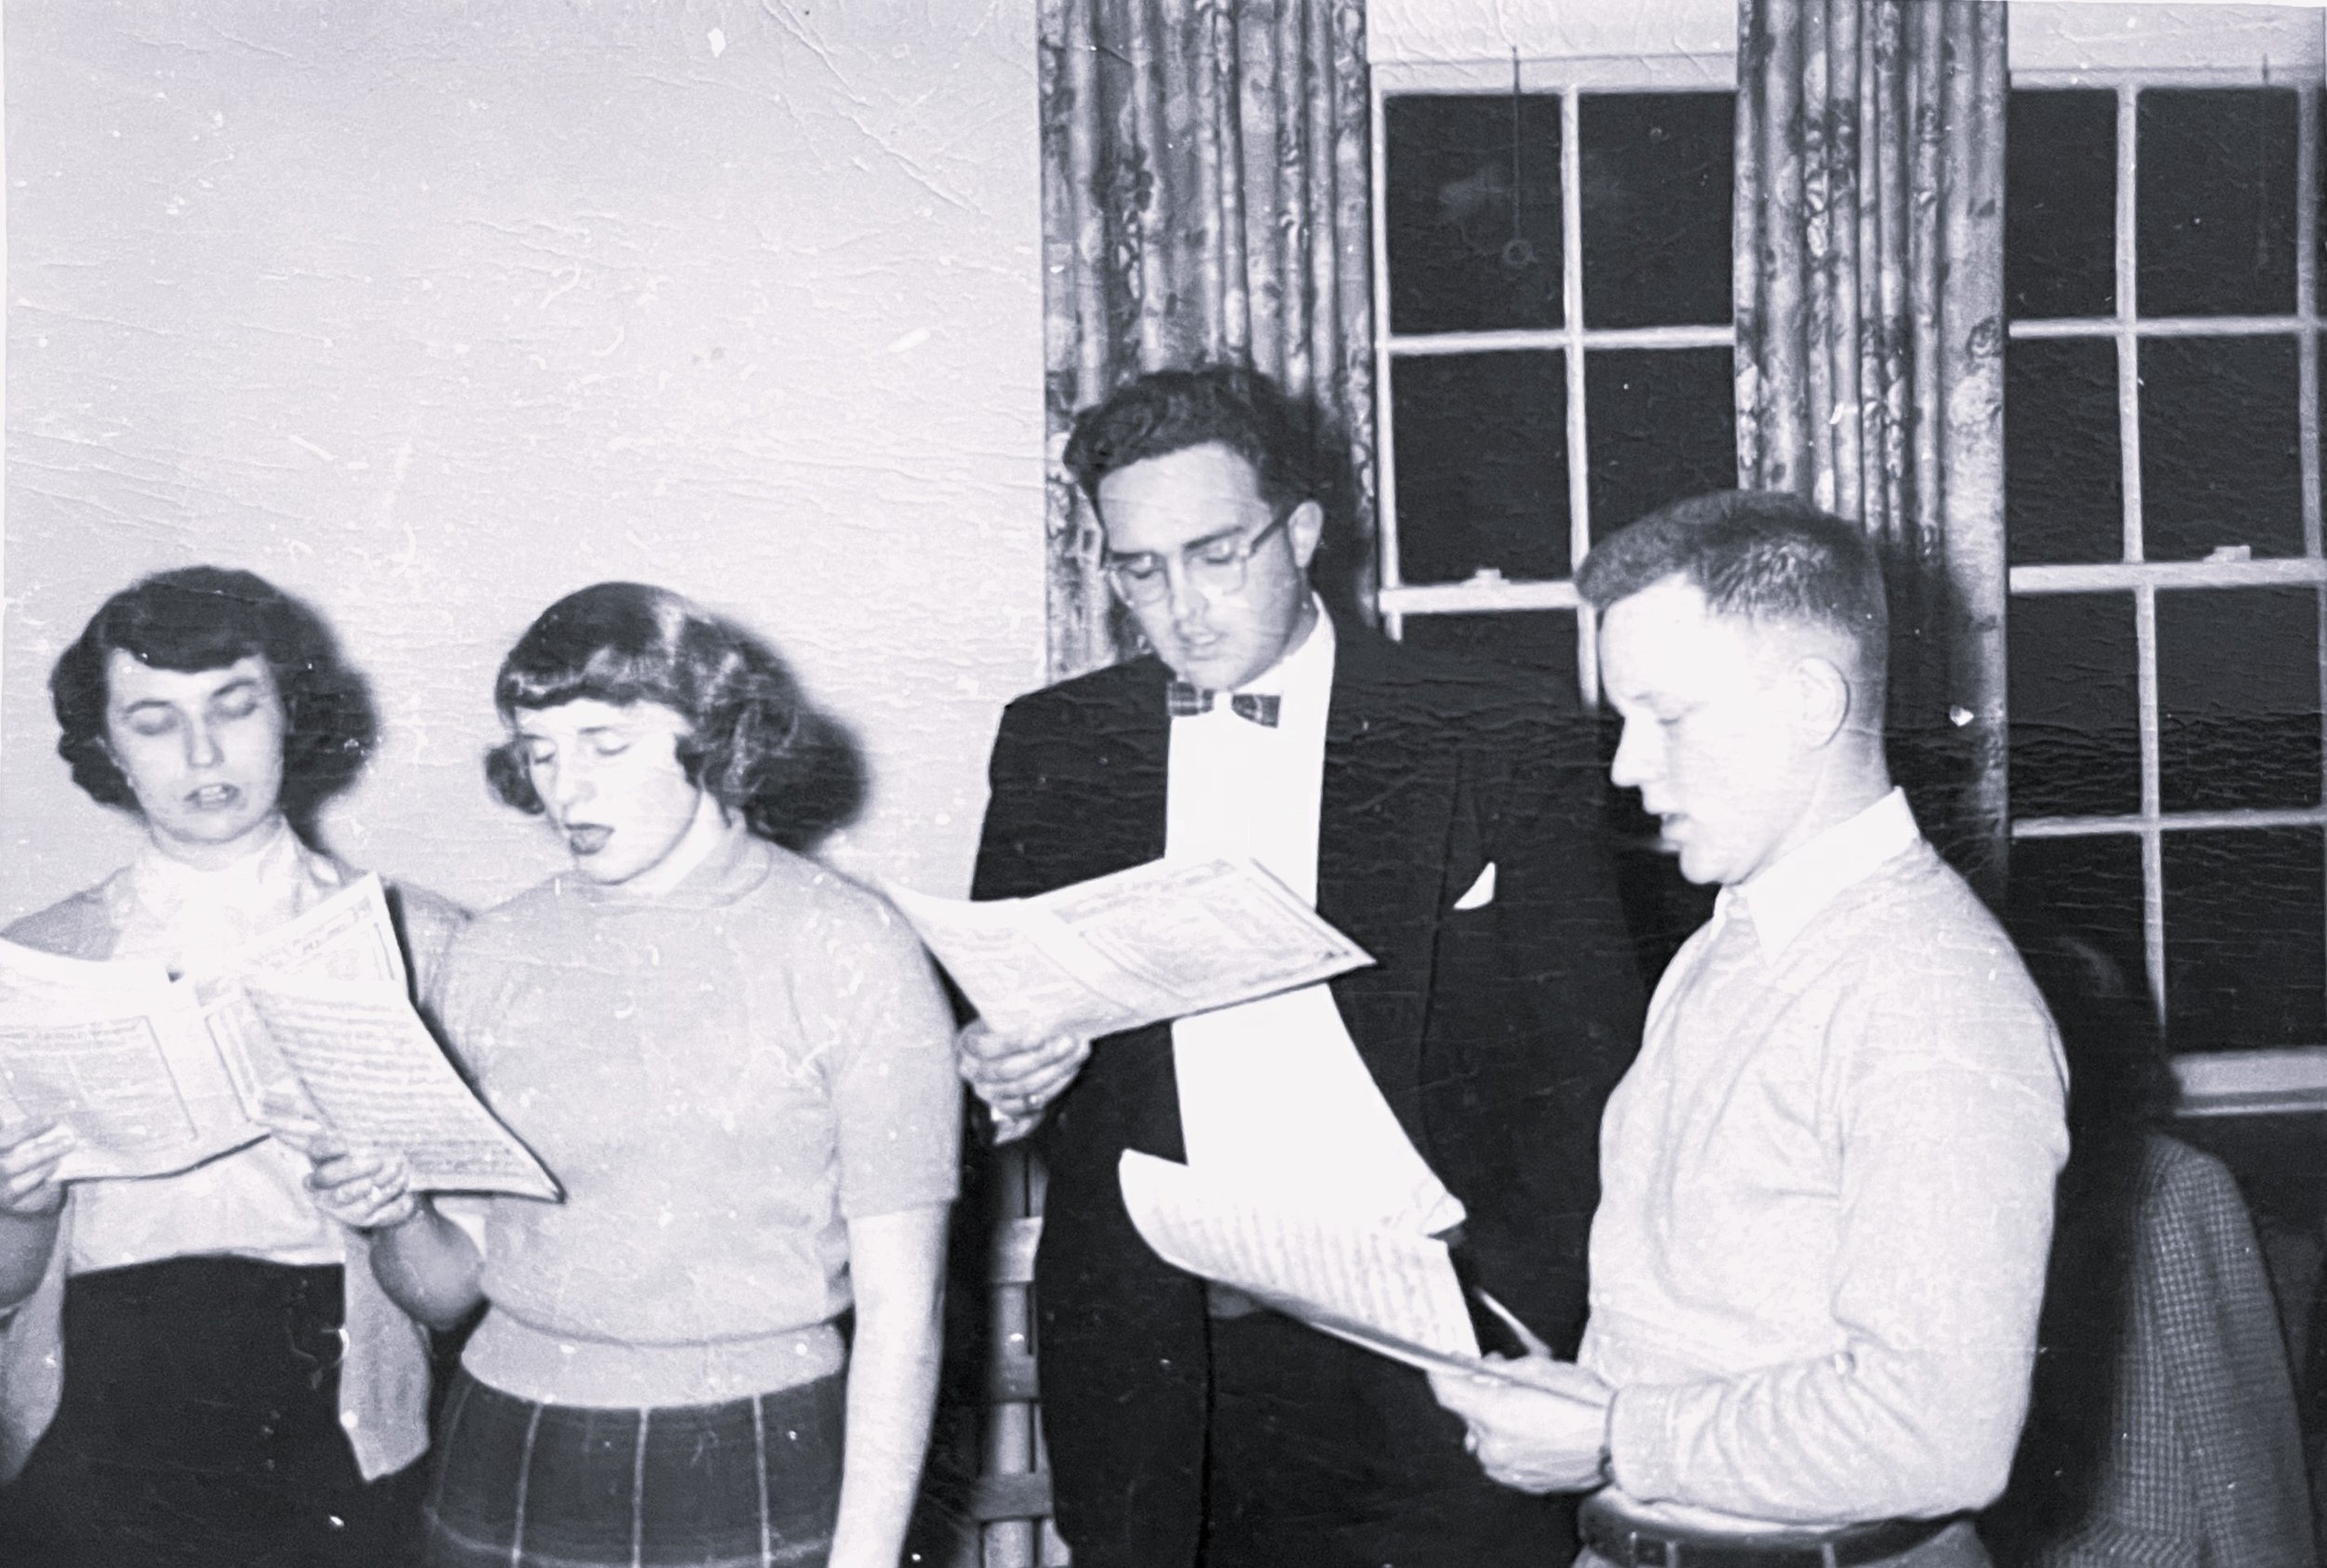 Feb 1952 Choir Party